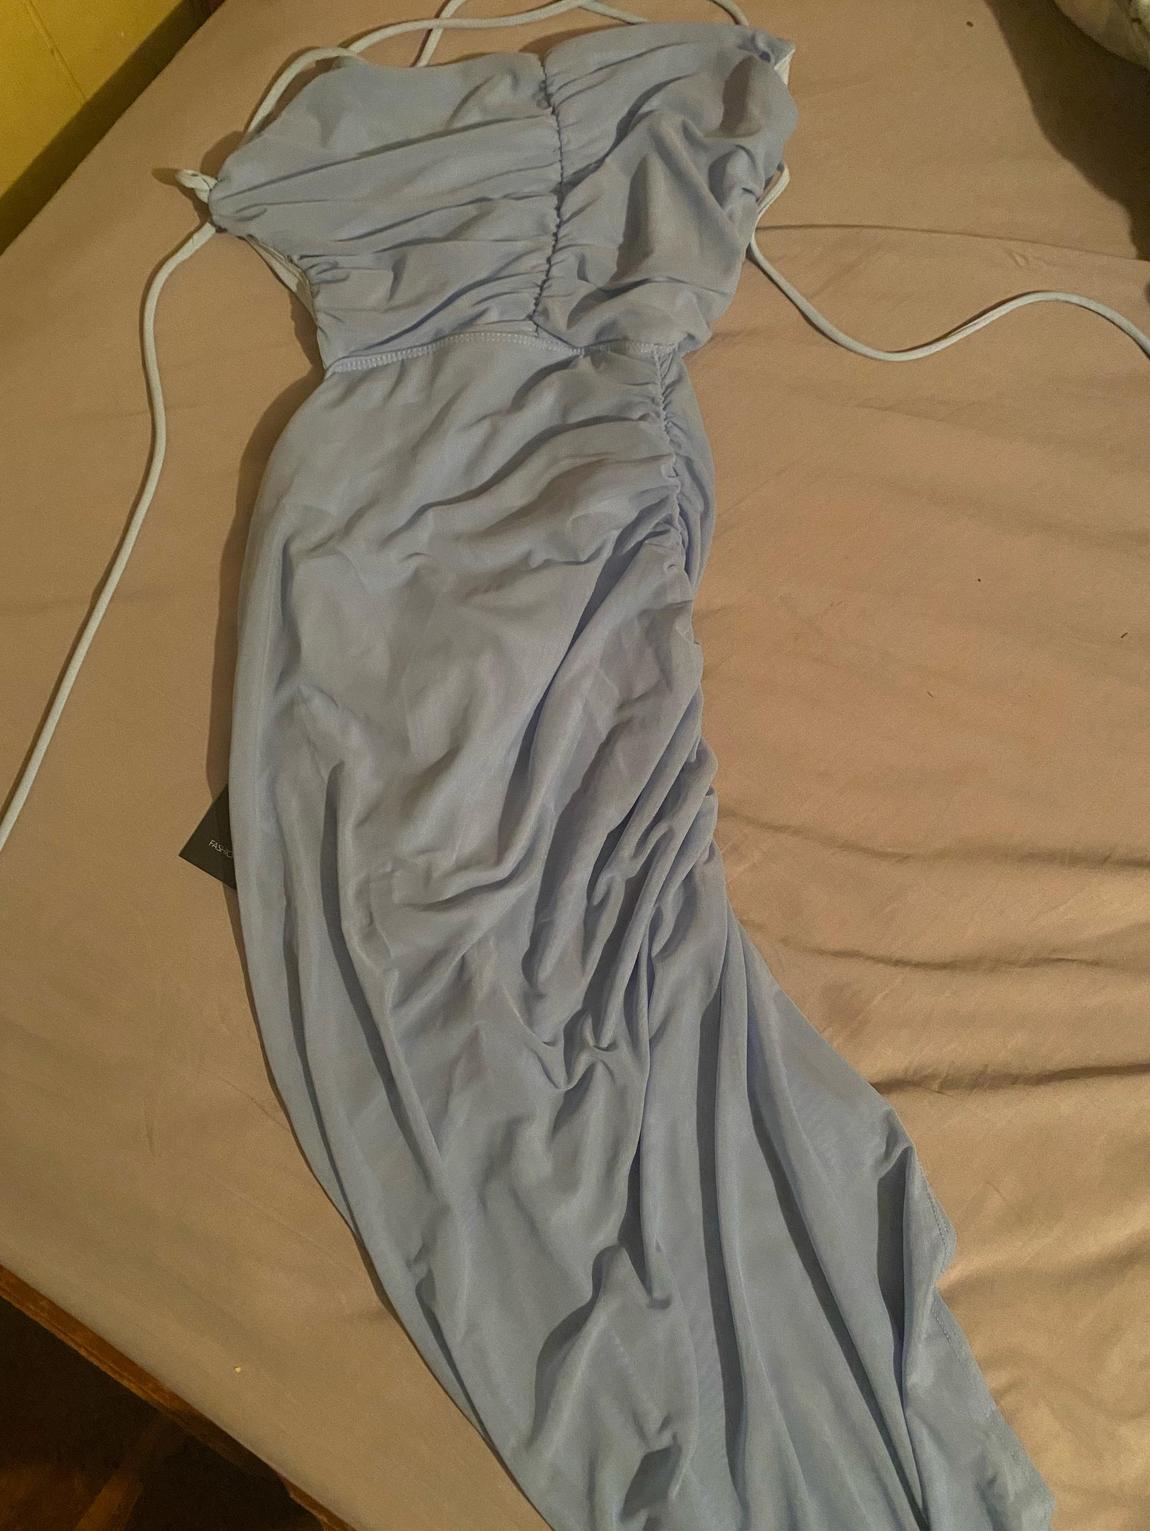 Size 8 Blue Side Slit Dress on Queenly